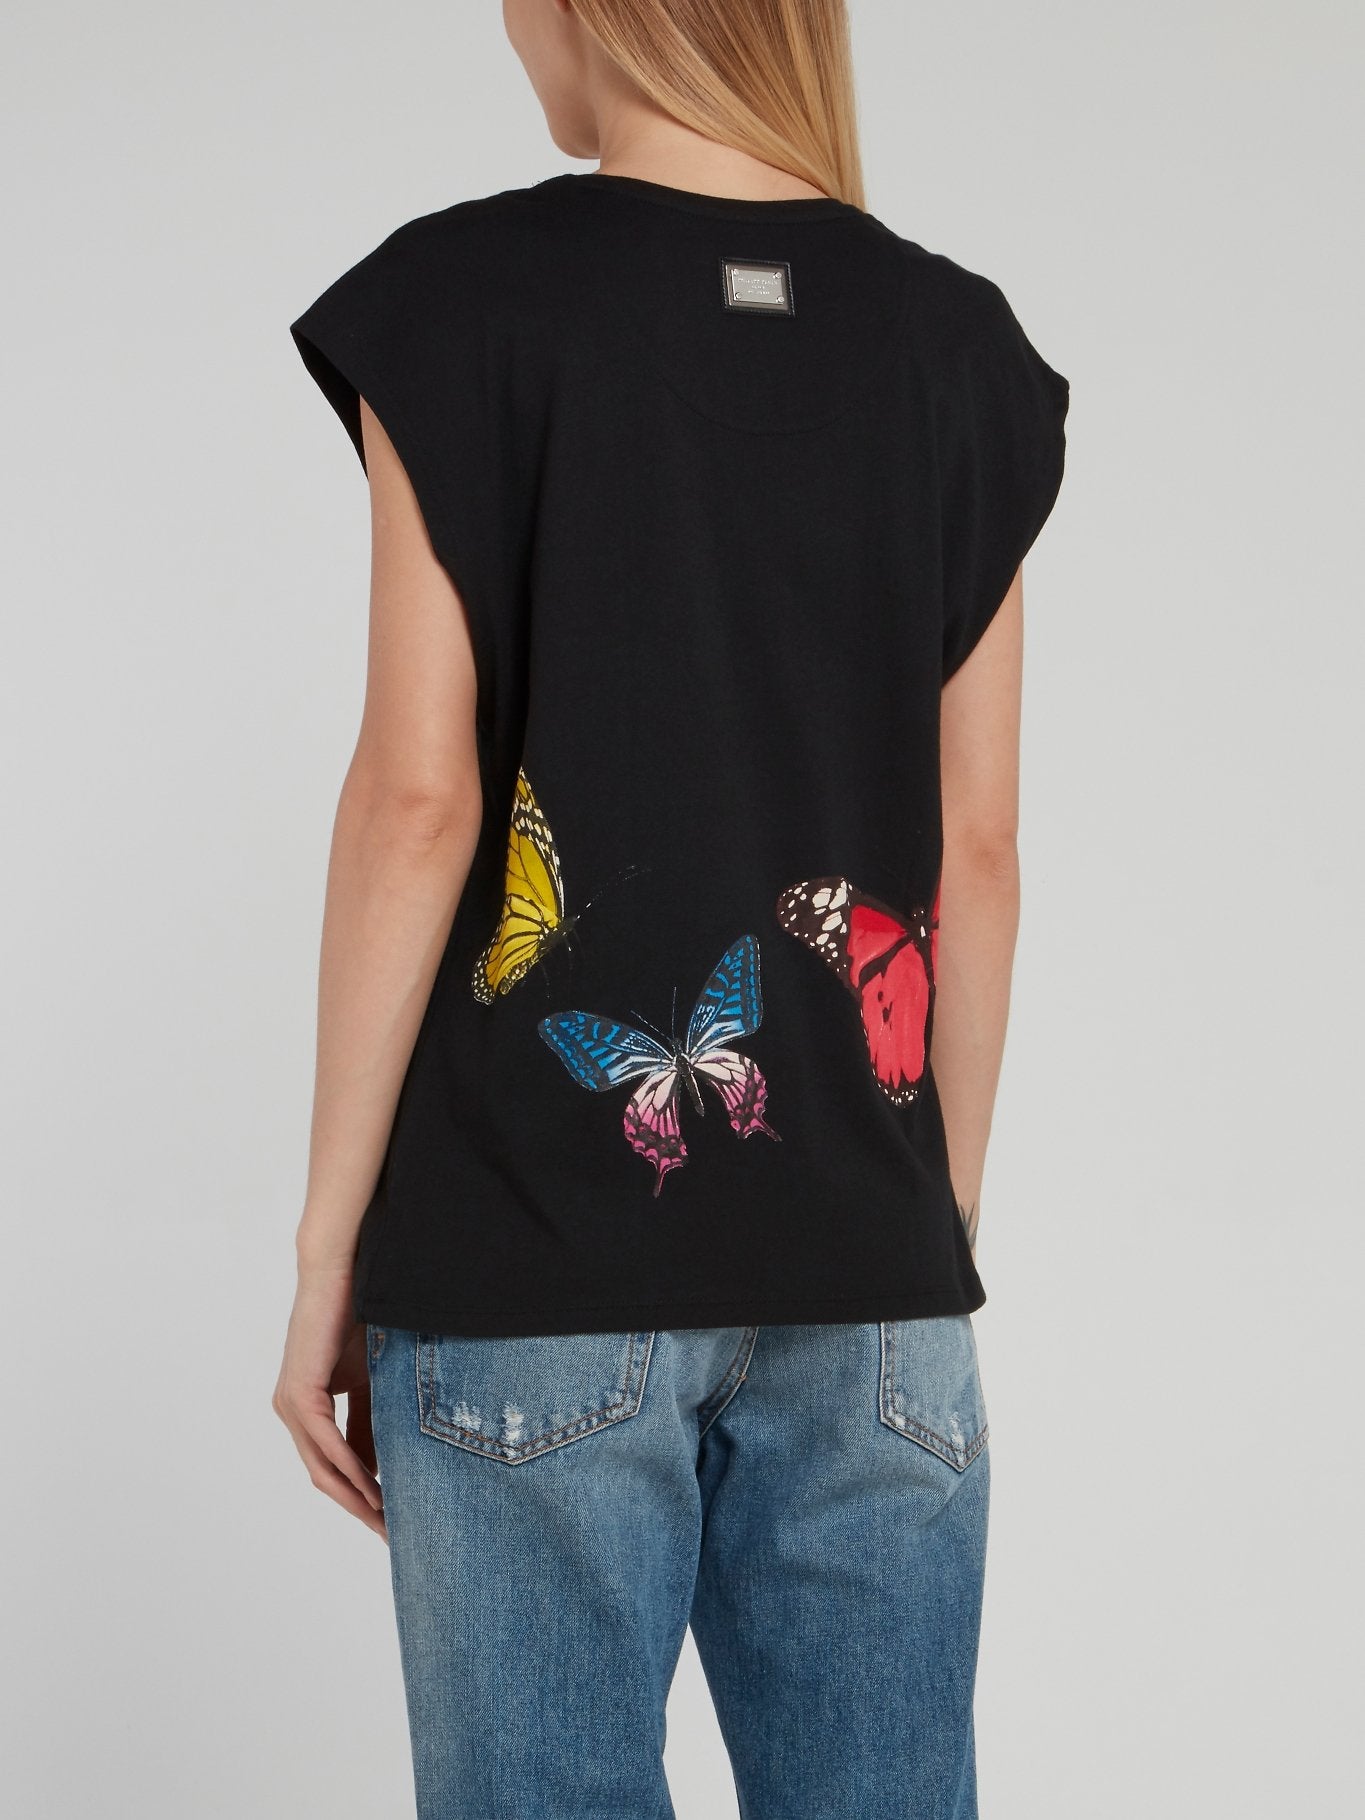 Черная футболка с рукавами "крылышко", принтом в виде бабочек и стразами